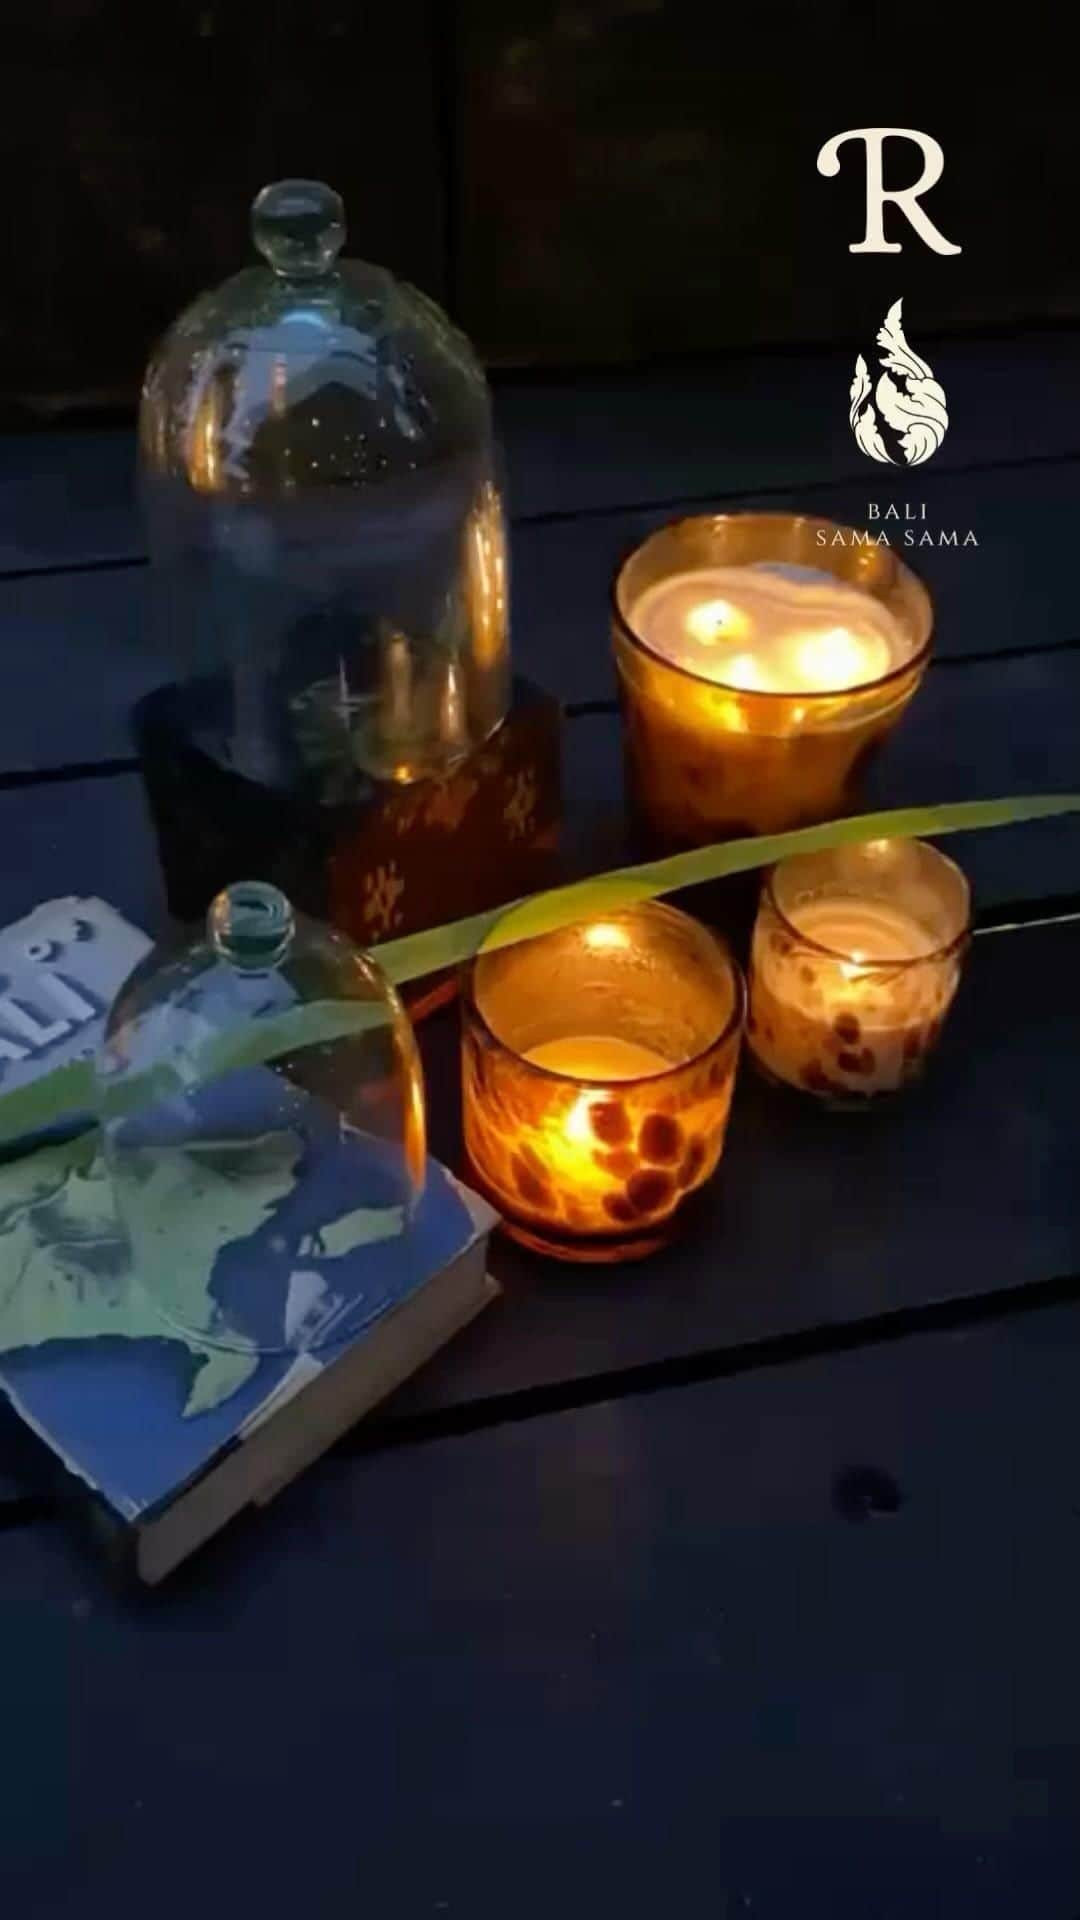 ベックスロックスのインスタグラム：「⚡️The Art of Wax Alchemy ⚡️ ⠀⠀⠀⠀⠀⠀⠀⠀⠀ A  Collaboration Between R Collective & Bali Sama Sama ⠀⠀⠀⠀⠀⠀⠀⠀⠀ * THE RETURN TO RESPONSIBLE LUXURY * PRESERVING TRADITION & ELEVATING TECHNIQUES * 100% ALL NATURAL INGREDIENTS  ⠀⠀⠀⠀⠀⠀⠀⠀⠀ Introducing our holiday season LTD EDN  gift box series of plant based artisanal and eco-friendly luxury candles; where every detail has passed through the hands of skilled masters to revere the art of craft and support rural village economies. ⠀⠀⠀⠀⠀⠀⠀⠀⠀ Uniquely focused on all-natural locally sourced ingredients. Offering you two harmonious and grounding scents, Blessings and Rice fields available in 4 sizes. ⠀⠀⠀⠀⠀⠀⠀⠀⠀ “Our mission is to support businesses in Bali and bring a little of the island’s natural essence to your home.”  . .. .  #TheArtofSlow #theartofwaxalchemy #glassblowing #candlemaking #limitededition #limitedstock #Responsiblymade  #recycledglass #artisanmade #sustainableluxury #tabletop #homeware #glassblowing #ombak #rcollectivehome #curatedstoriesandobjects #consciousgiftguide #artisanalcandles #lightacandle #morelight #ecofriendly .」